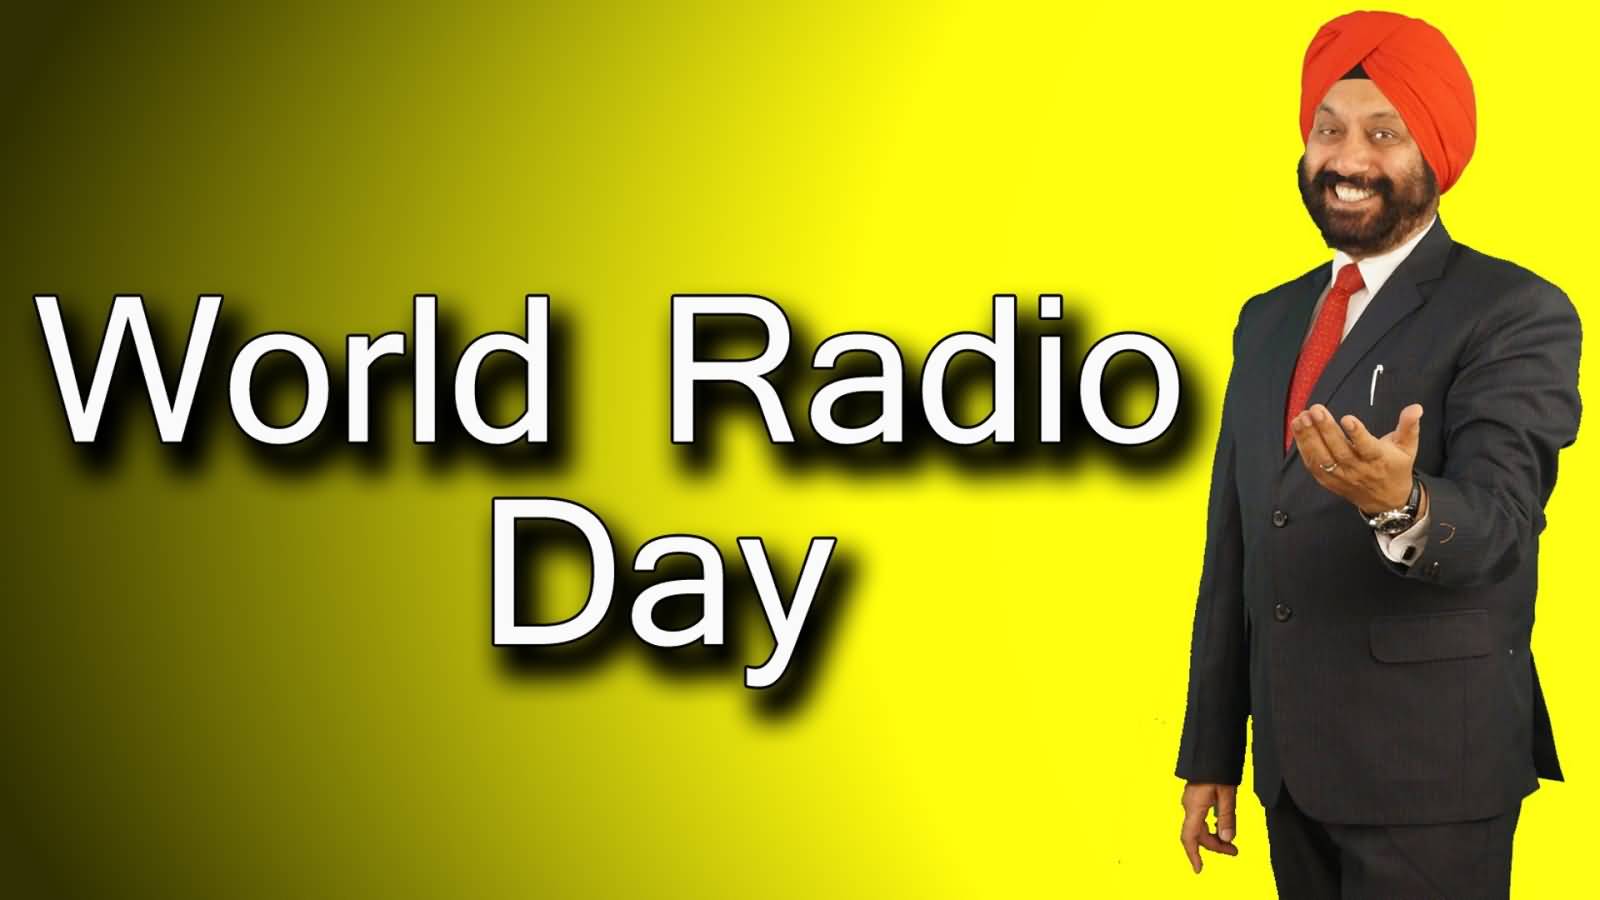 World Radio Day Wishes